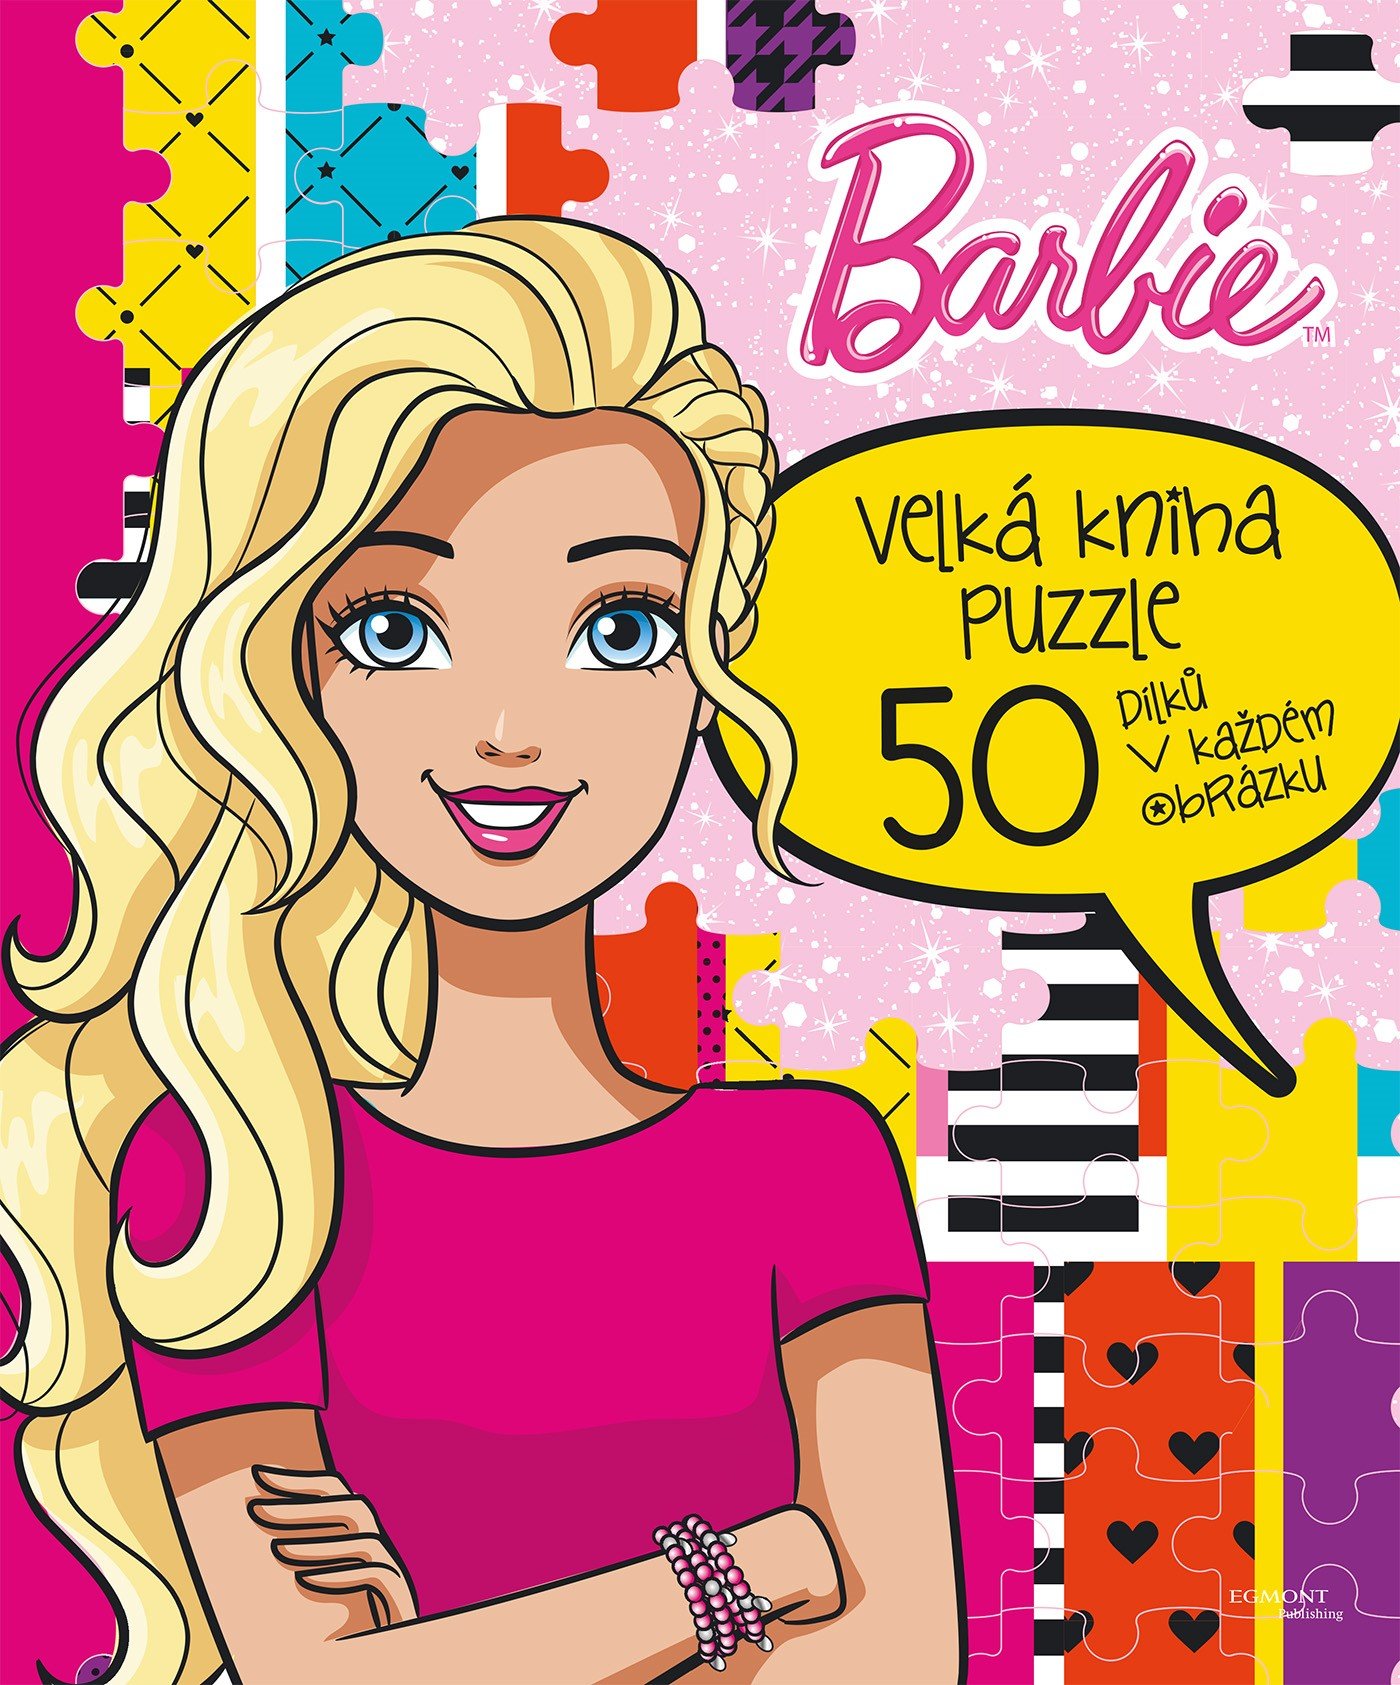 Barbie Velká kniha puzzle - kolektiv autorů